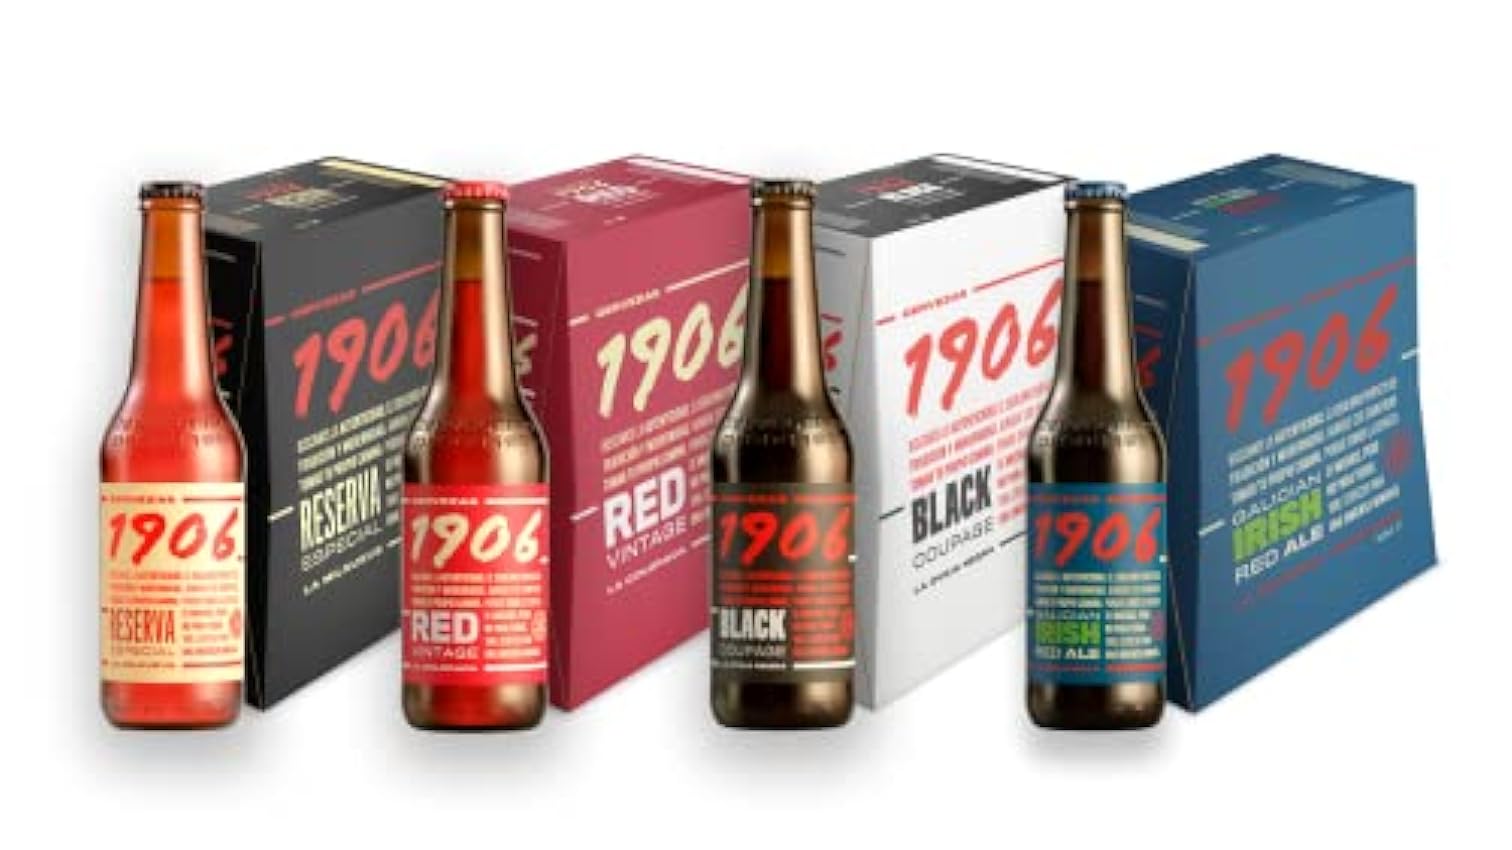 1906 Familia Cervezas - Pack Combinado de 24 Botellas x 33 cl, 1 Pack de 1906 Reserva Especial, 1 Pack de 1906 Galician Irish Red, 1 Pack de 1906 Red Vintage, 1 Pack de 1906 Black Coupage M7ynXCef